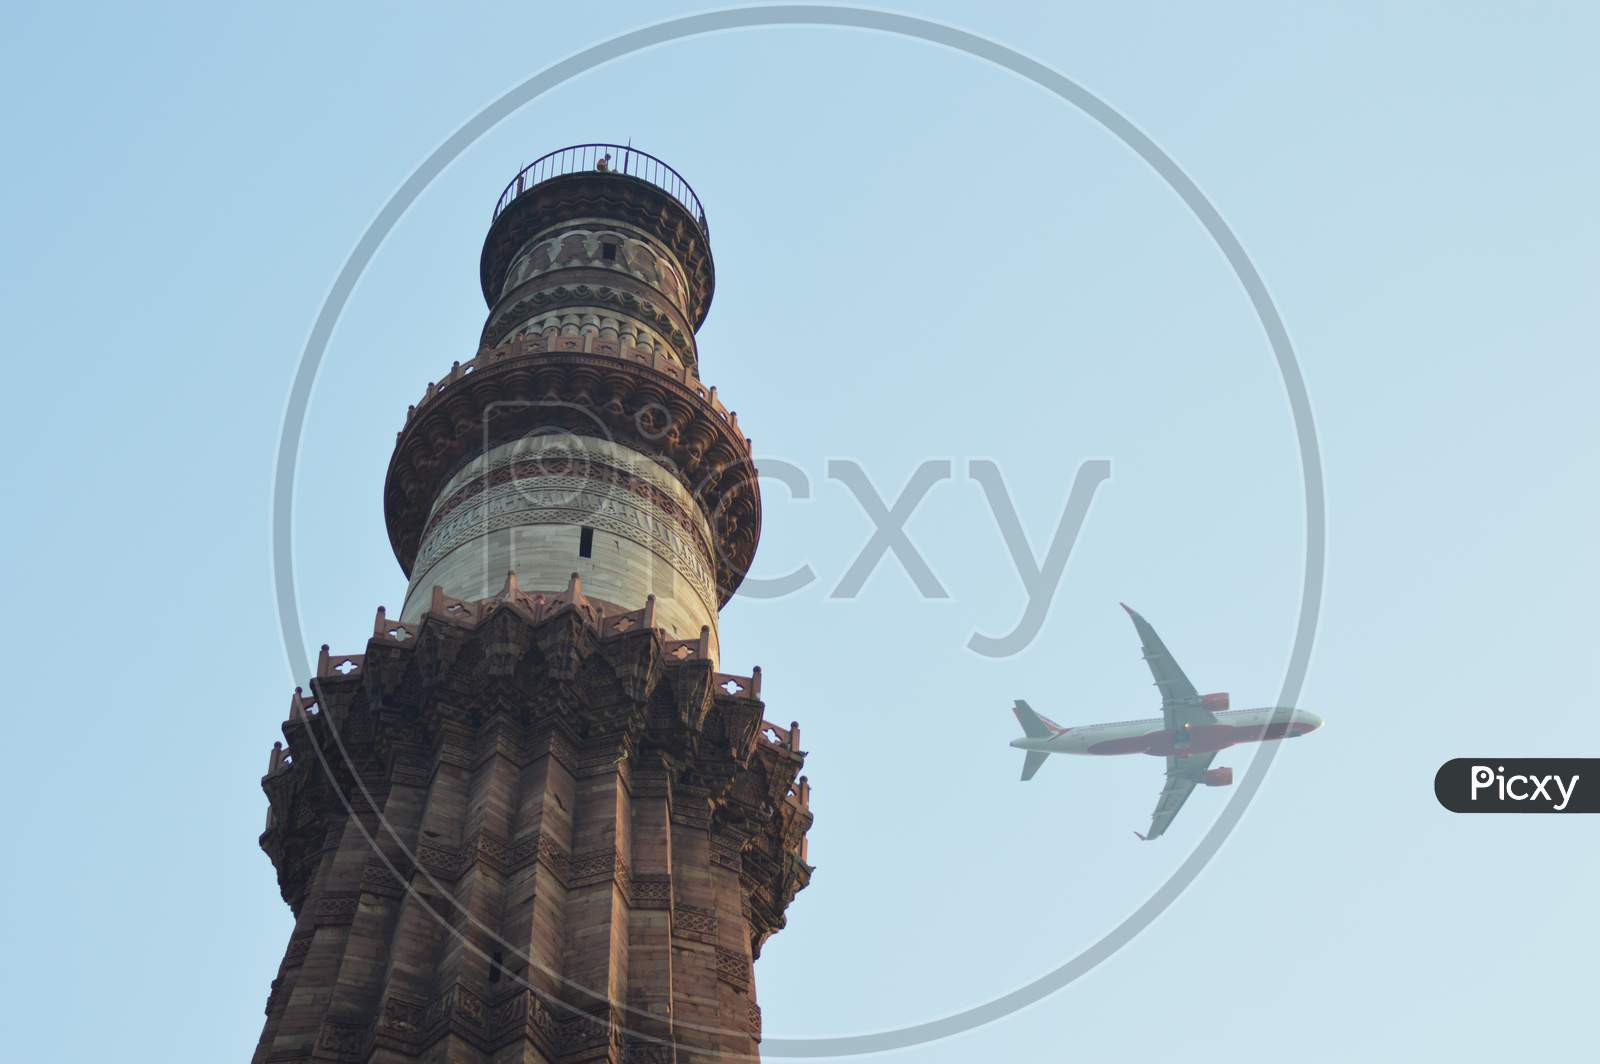 Kutub Minar , Delhi